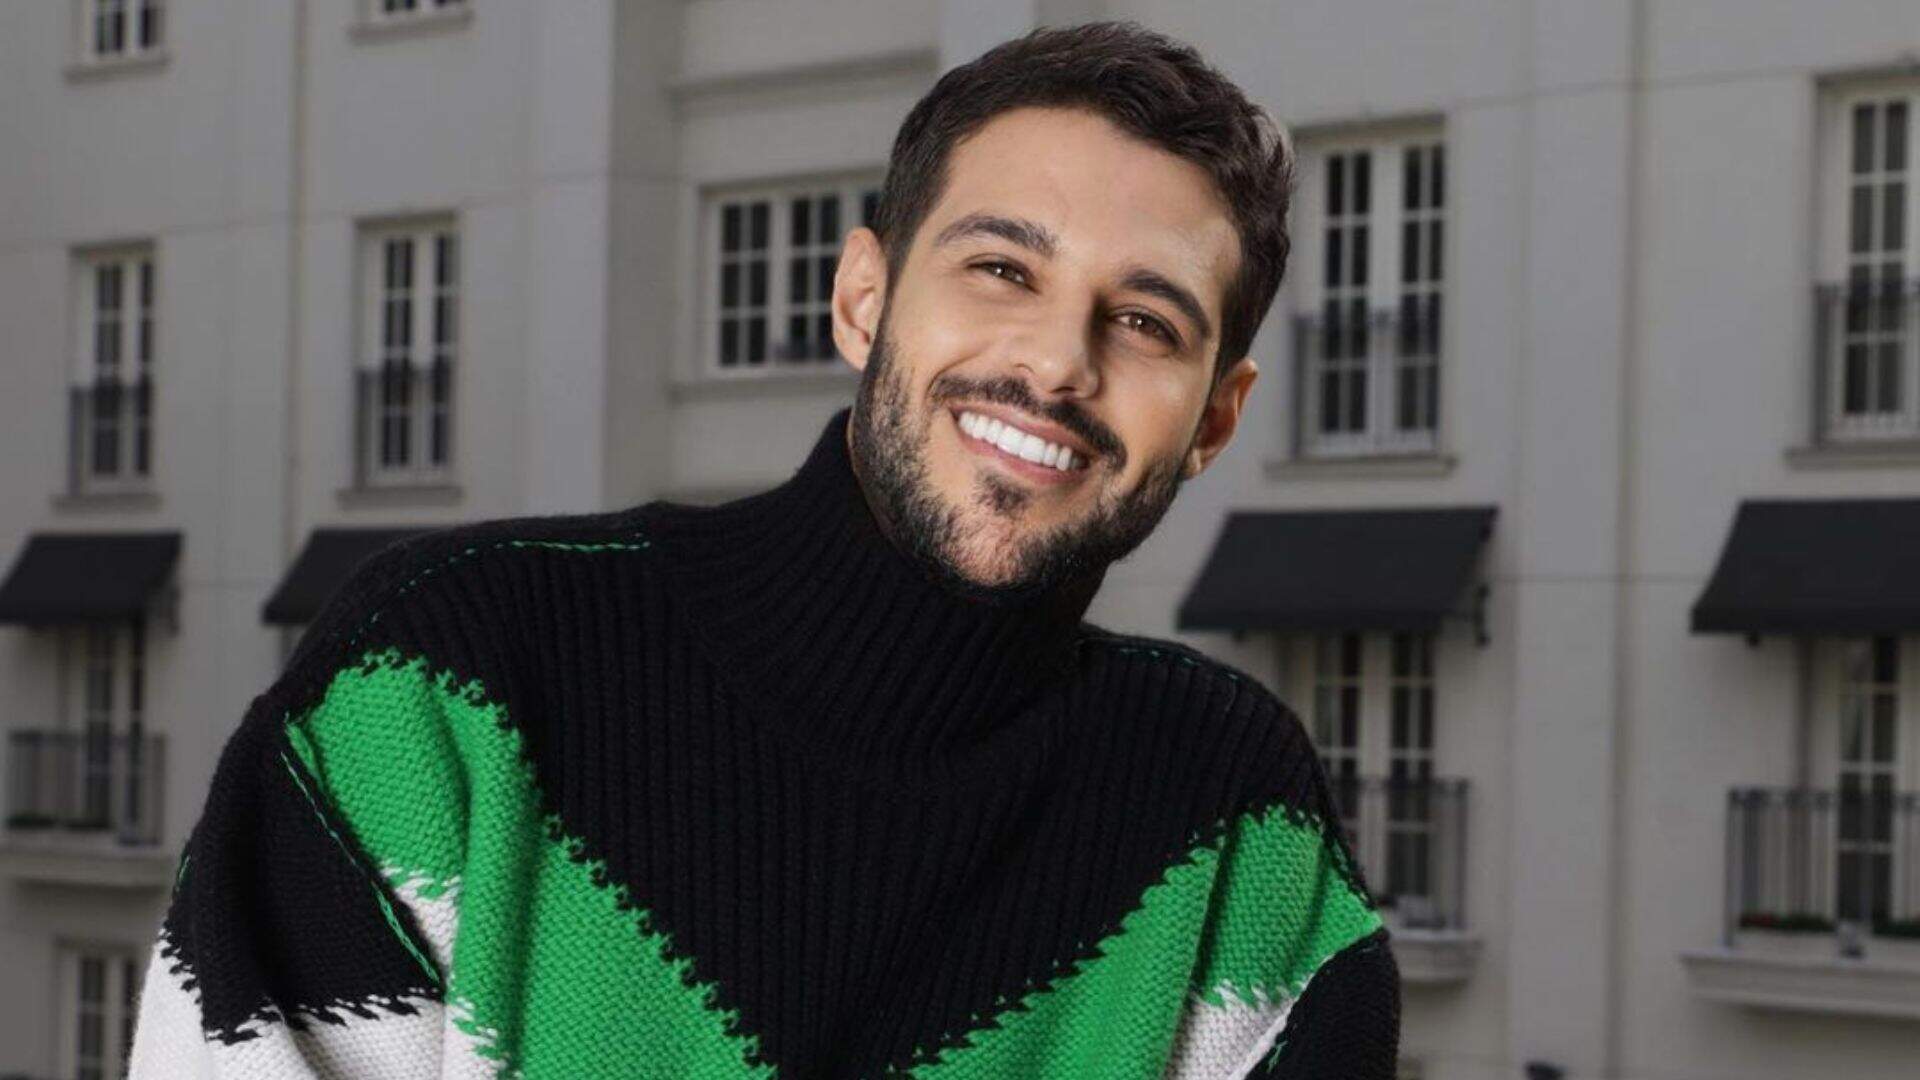 Após grave acidente, Rodrigo Mussi revela estar lutando contra depressão - Metropolitana FM